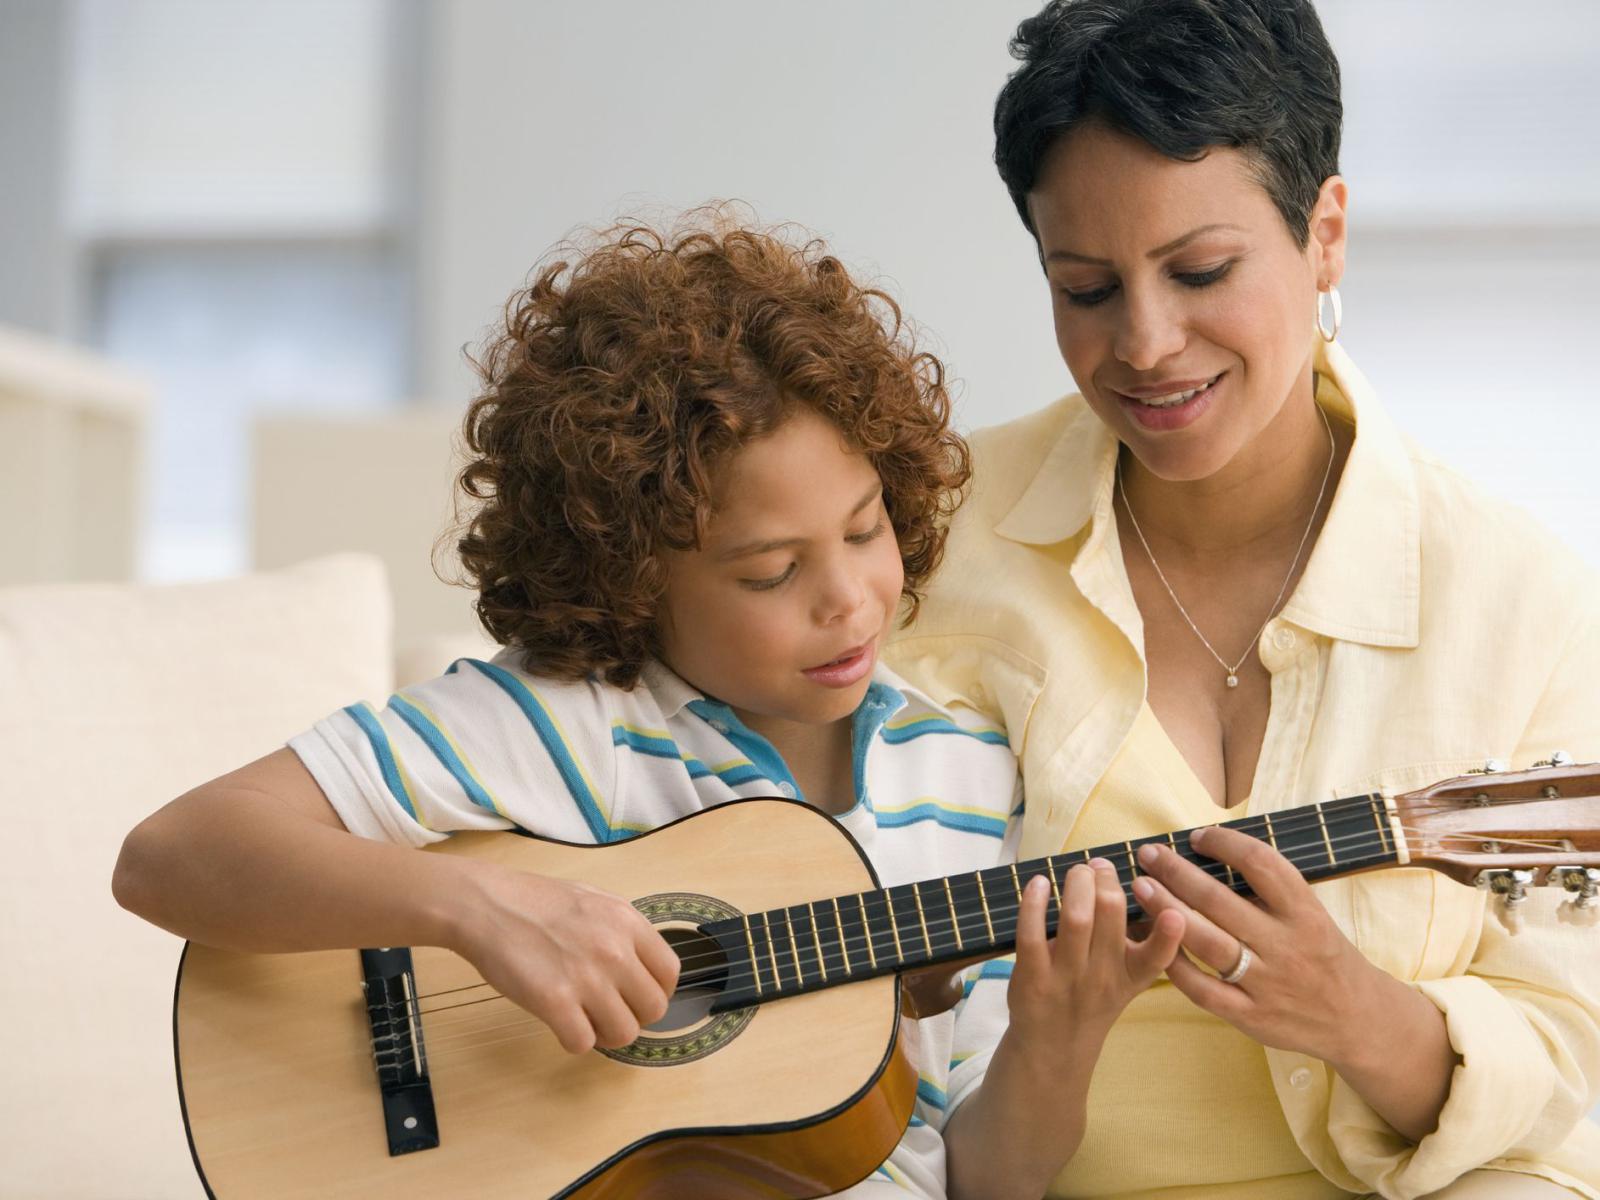 Điều gì tạo nên một cây guitar tốt cho trẻ em?